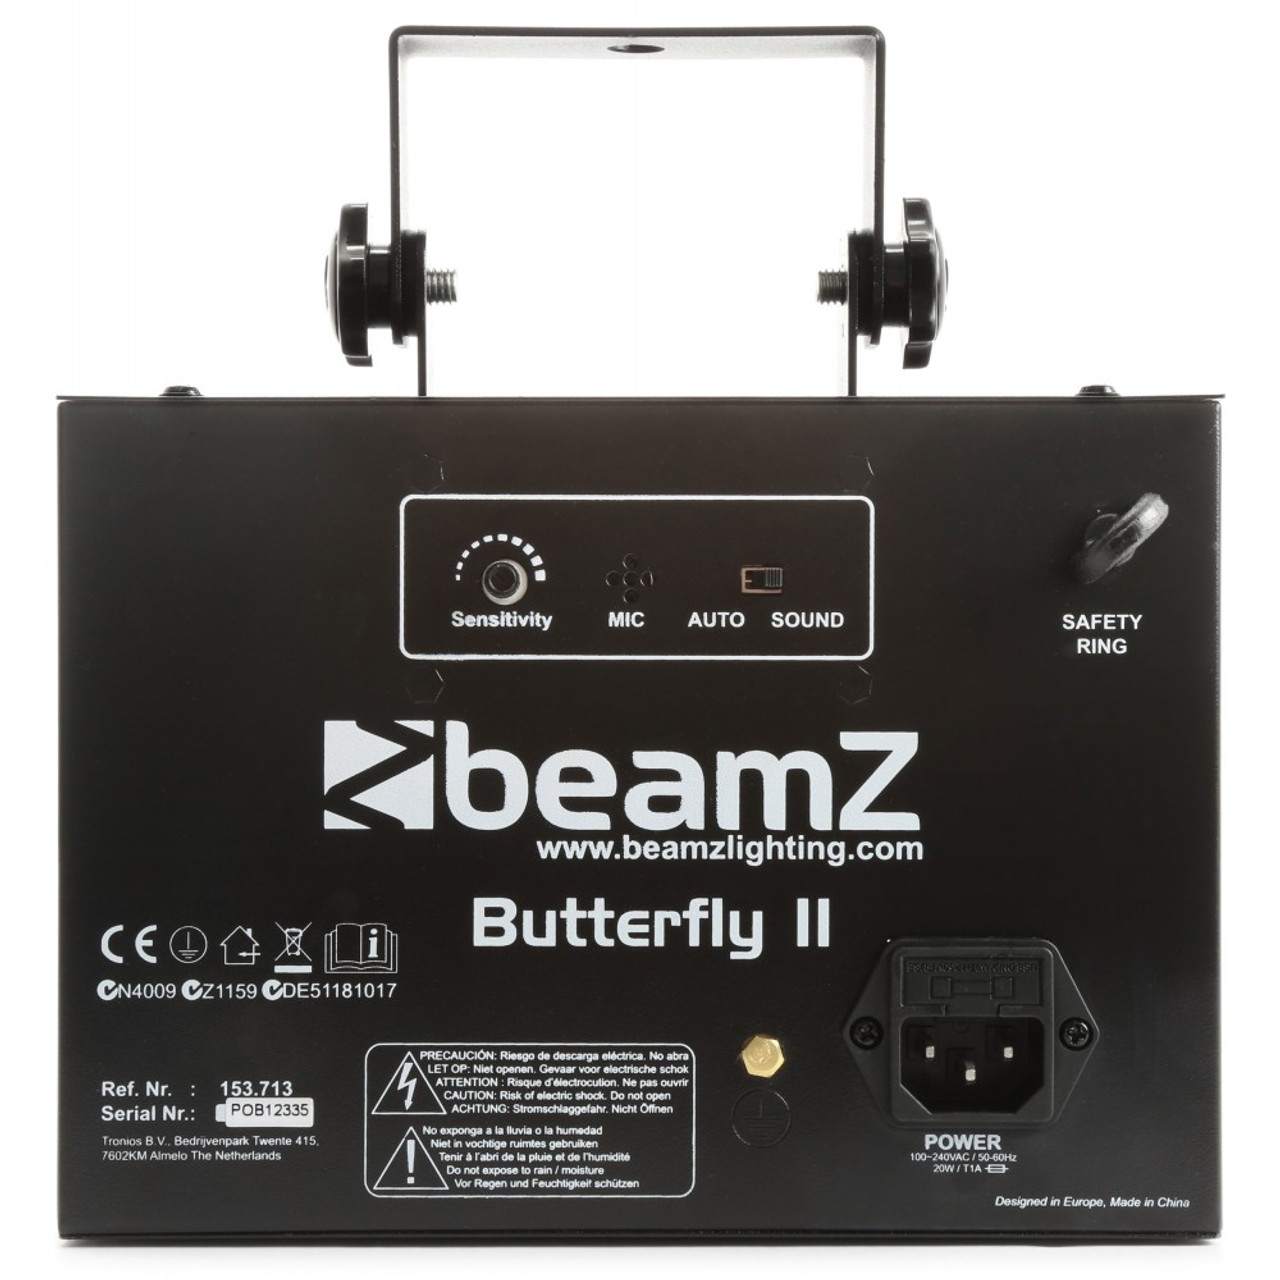 153.713 - Beamz Butterfly II LED DJ Effect Light